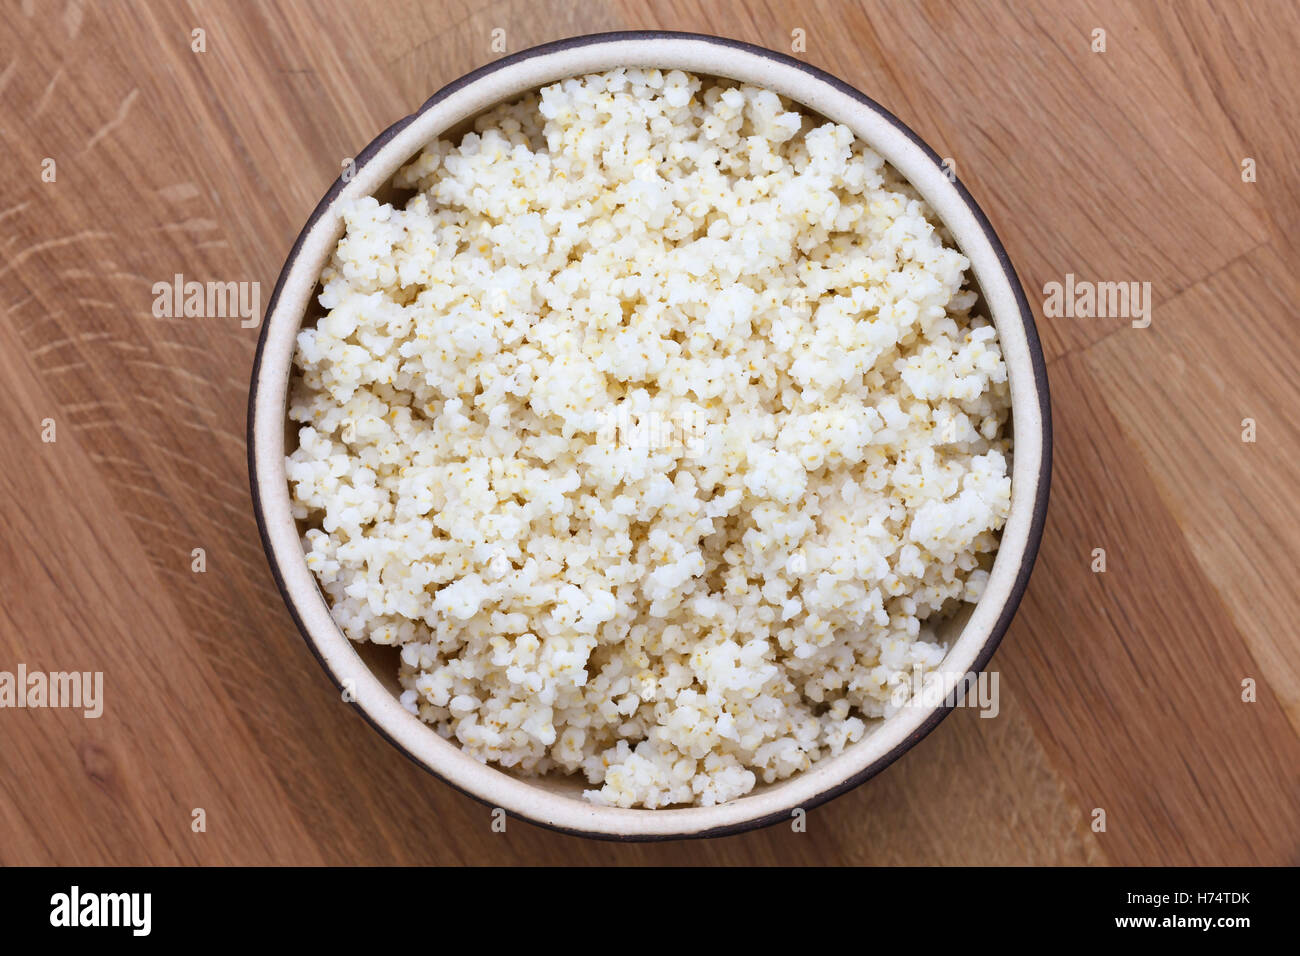 Le quinoa cuit dans un bol en céramique sur bois table. Banque D'Images